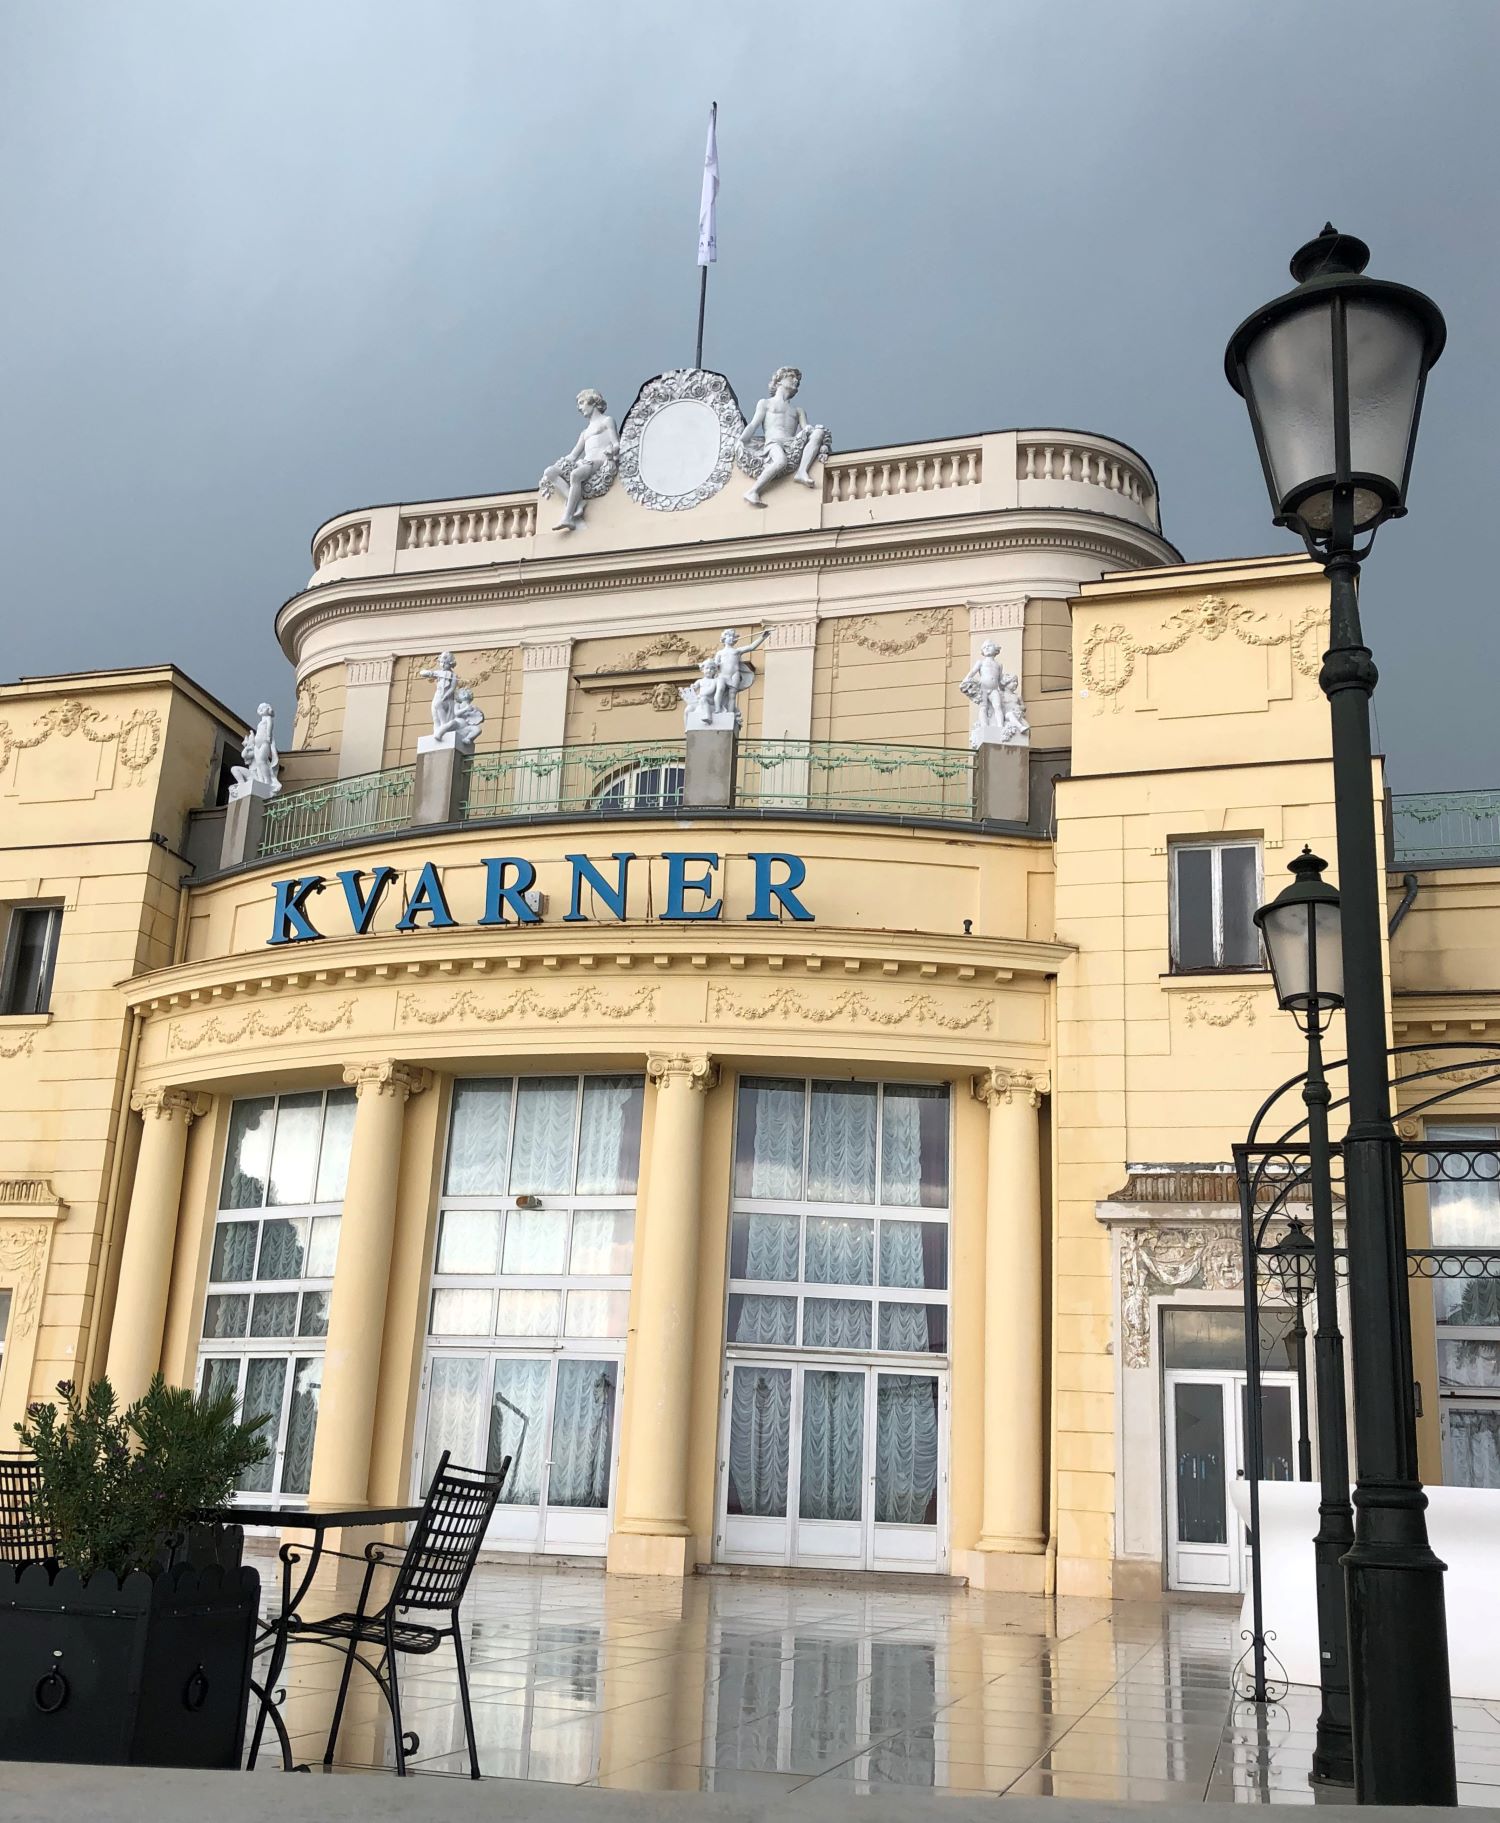 Das Hotel Kvarner eröffnete 1884 als erstes Hotel an der Kvarner Bucht in Kroatien